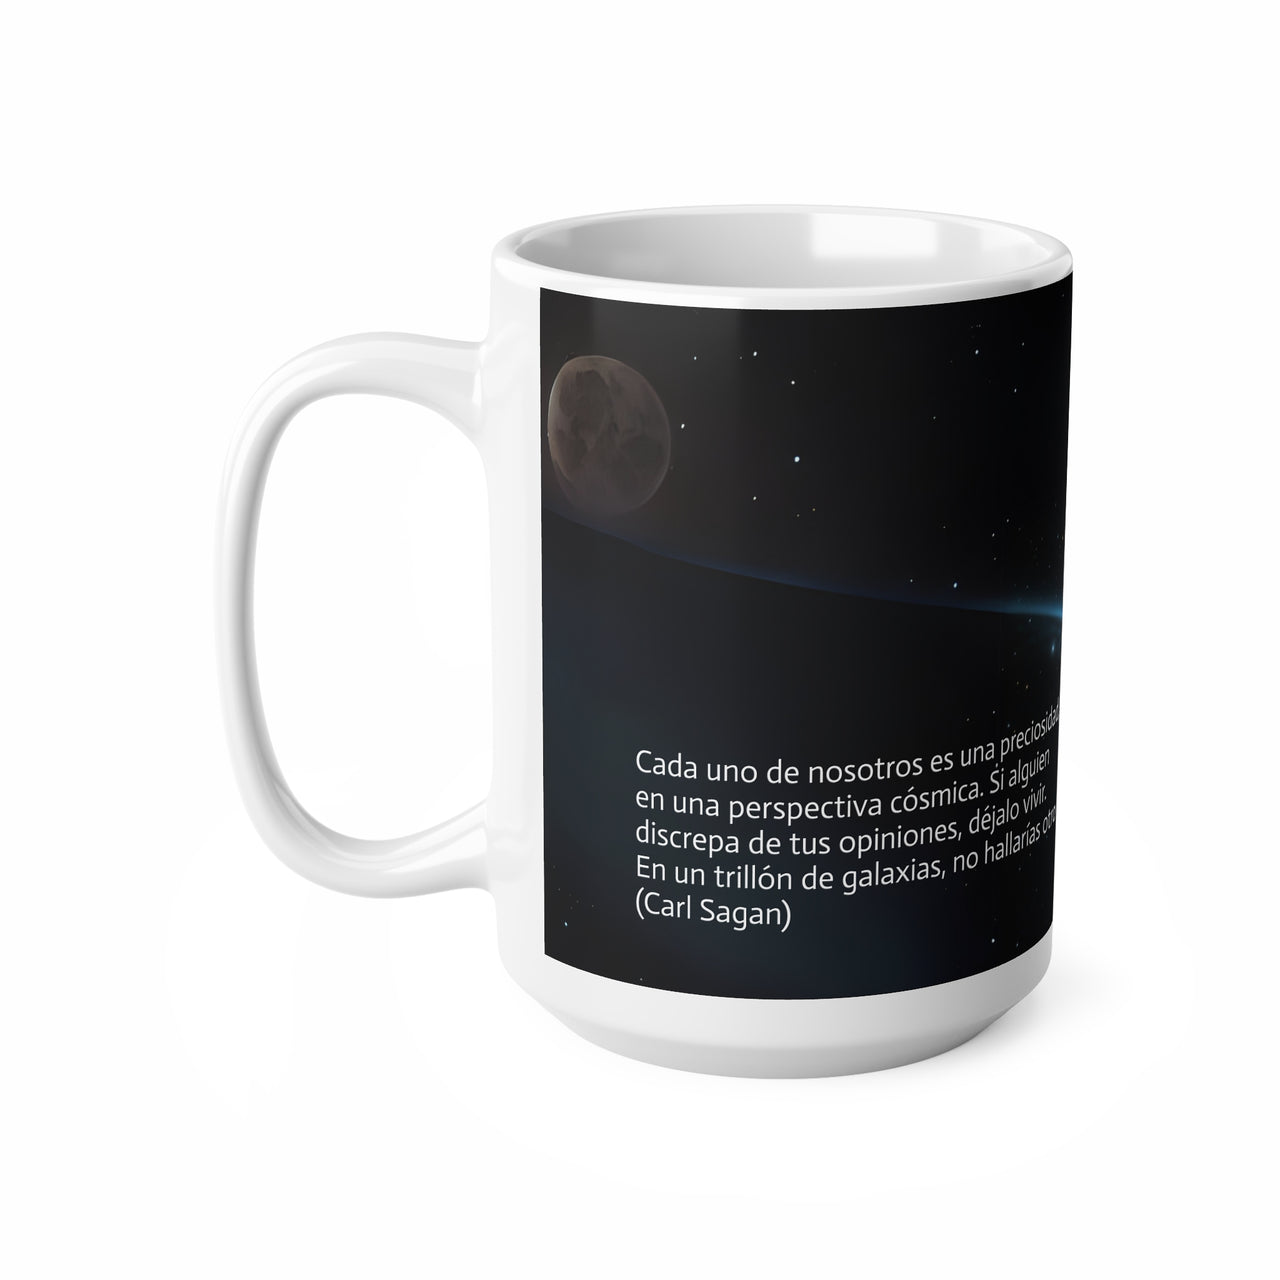 Taza "perspectiva cósmica", Taza con frase de Carl Sagan, Taza de desayuno cósmico, 0.33 l, 0.44 l